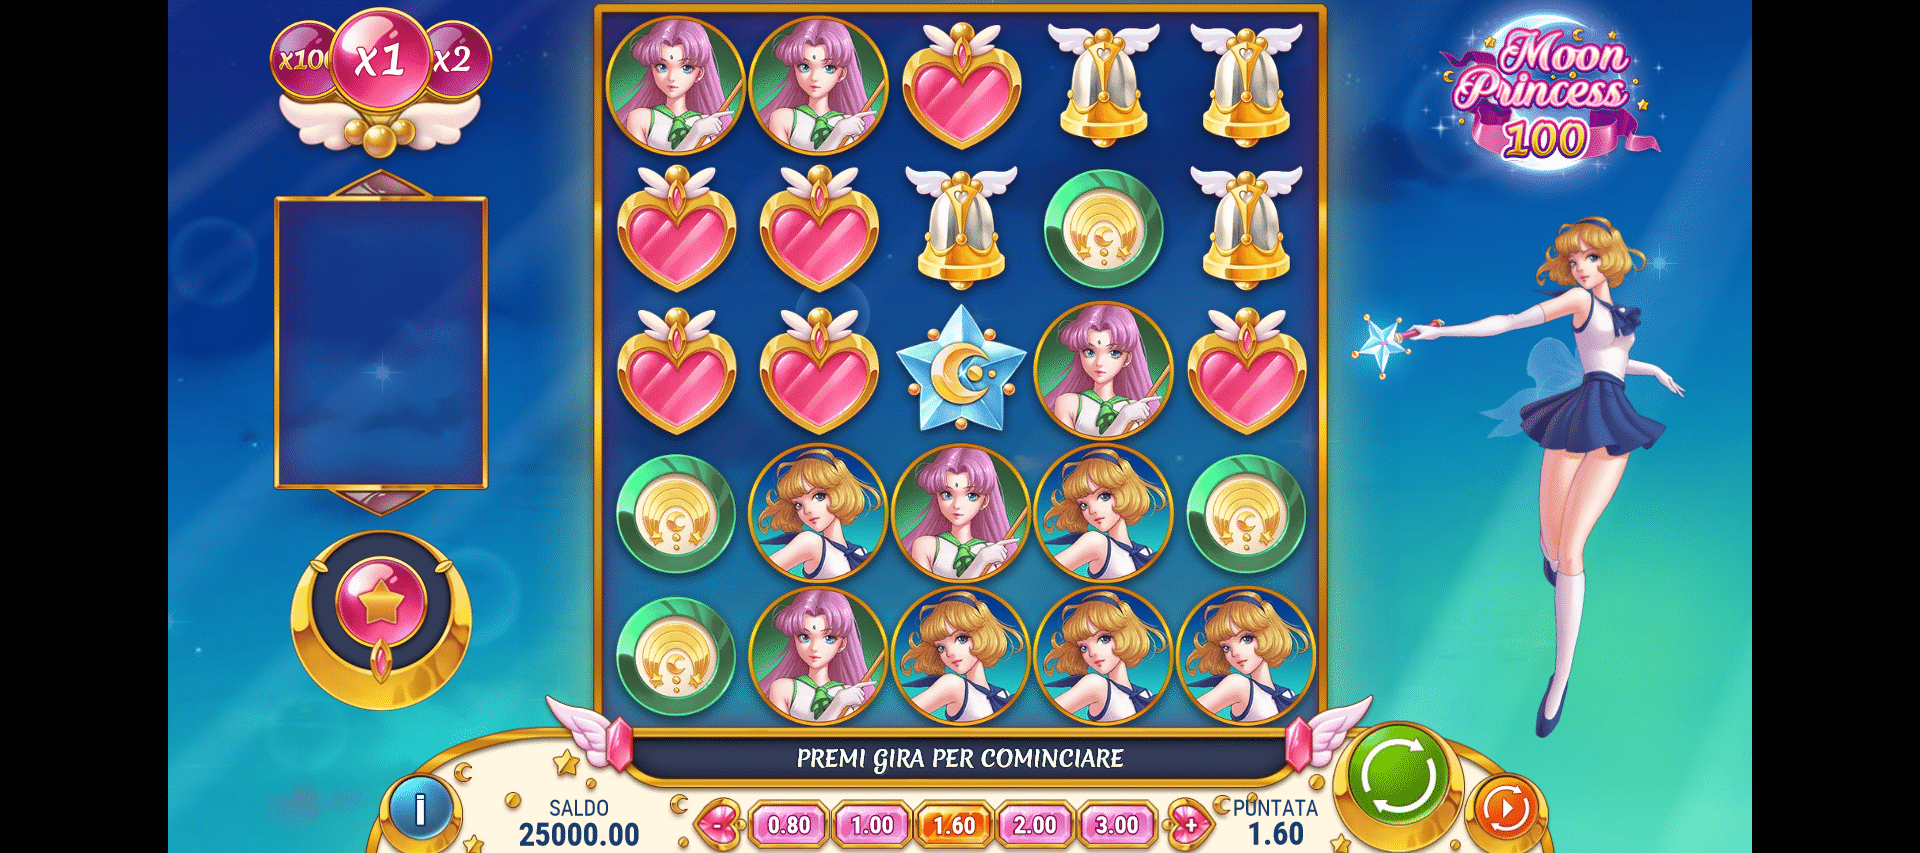 schermata di gioco della slot machine moon princess